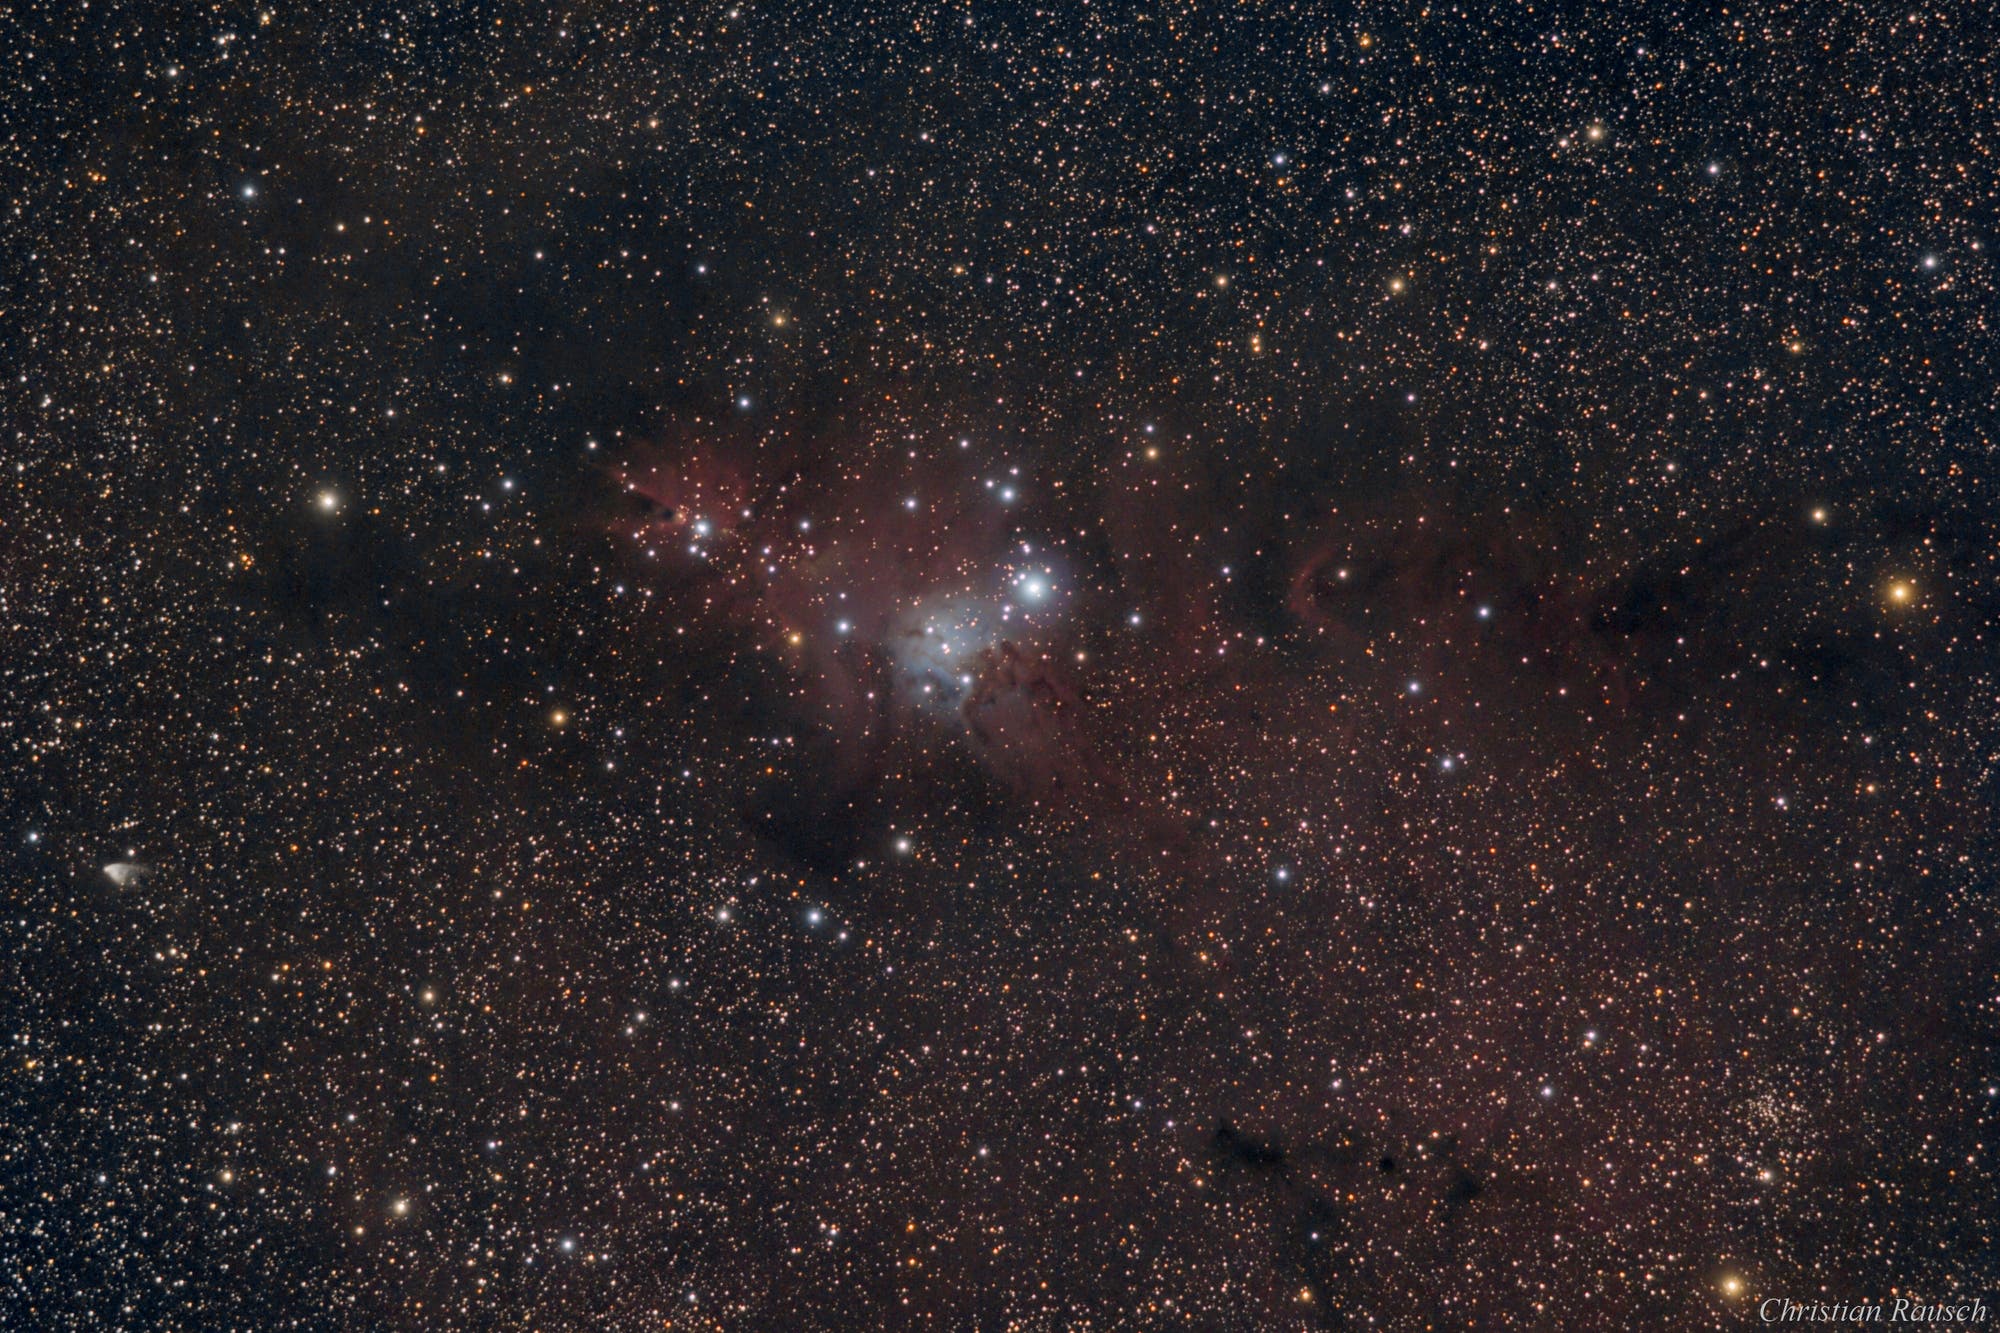  NGC2264 - Weihnachtsbaum Sternhaufen, Konusnebel und diffuse Gasnebel im Einhorn